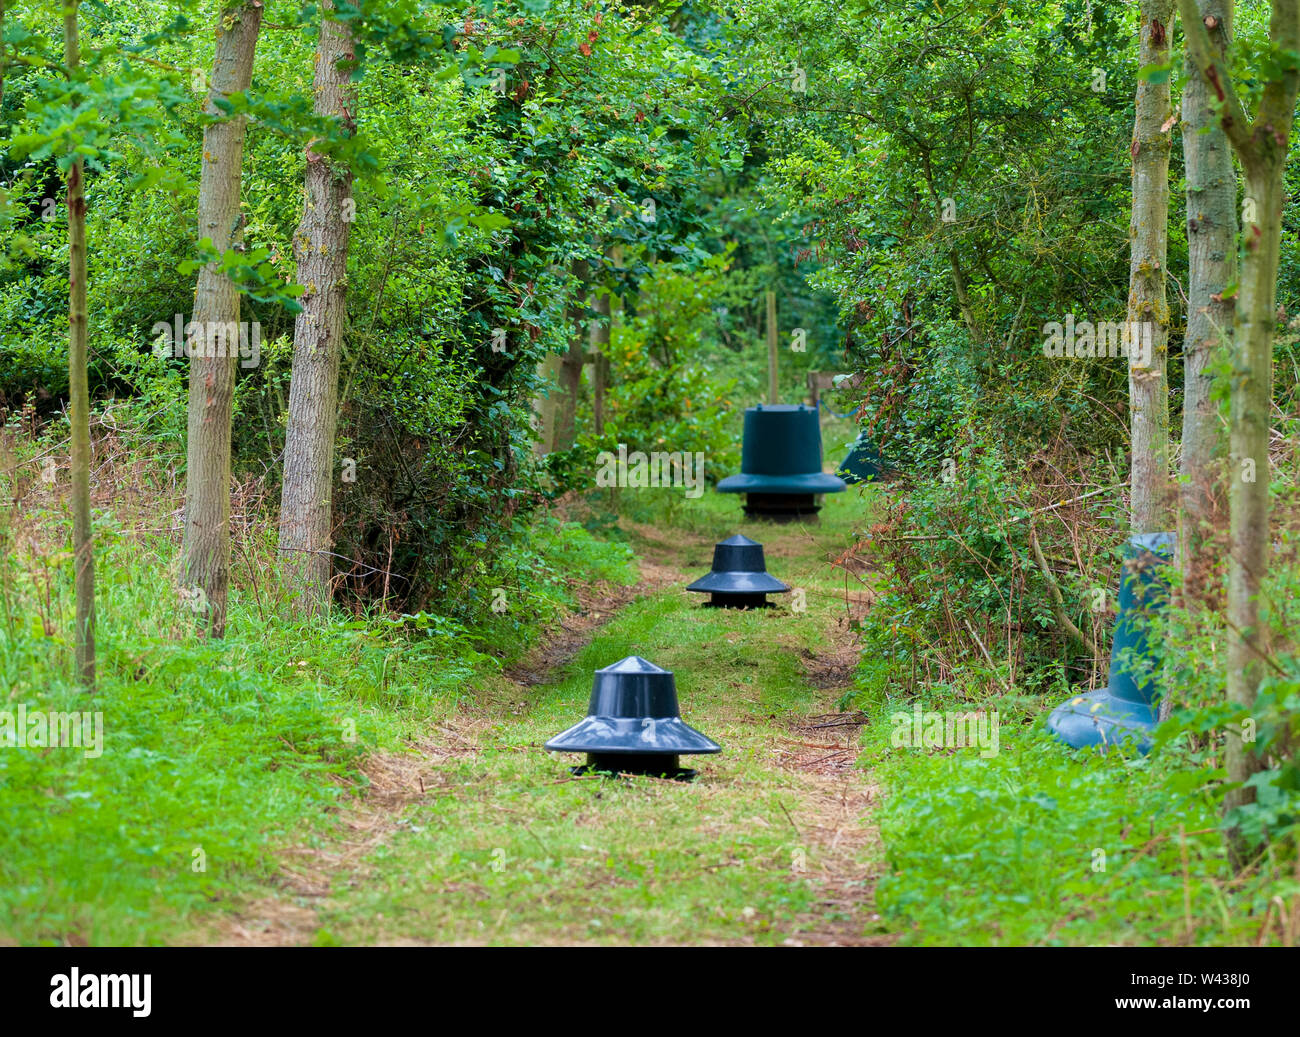 Zuführungen für Fasane, Rebhühner und federwild von einem wildhüter verwendet saß in einer Fütterung Reiten im Wald auf einem traditionellen Immobilien schießen in England Stockfoto